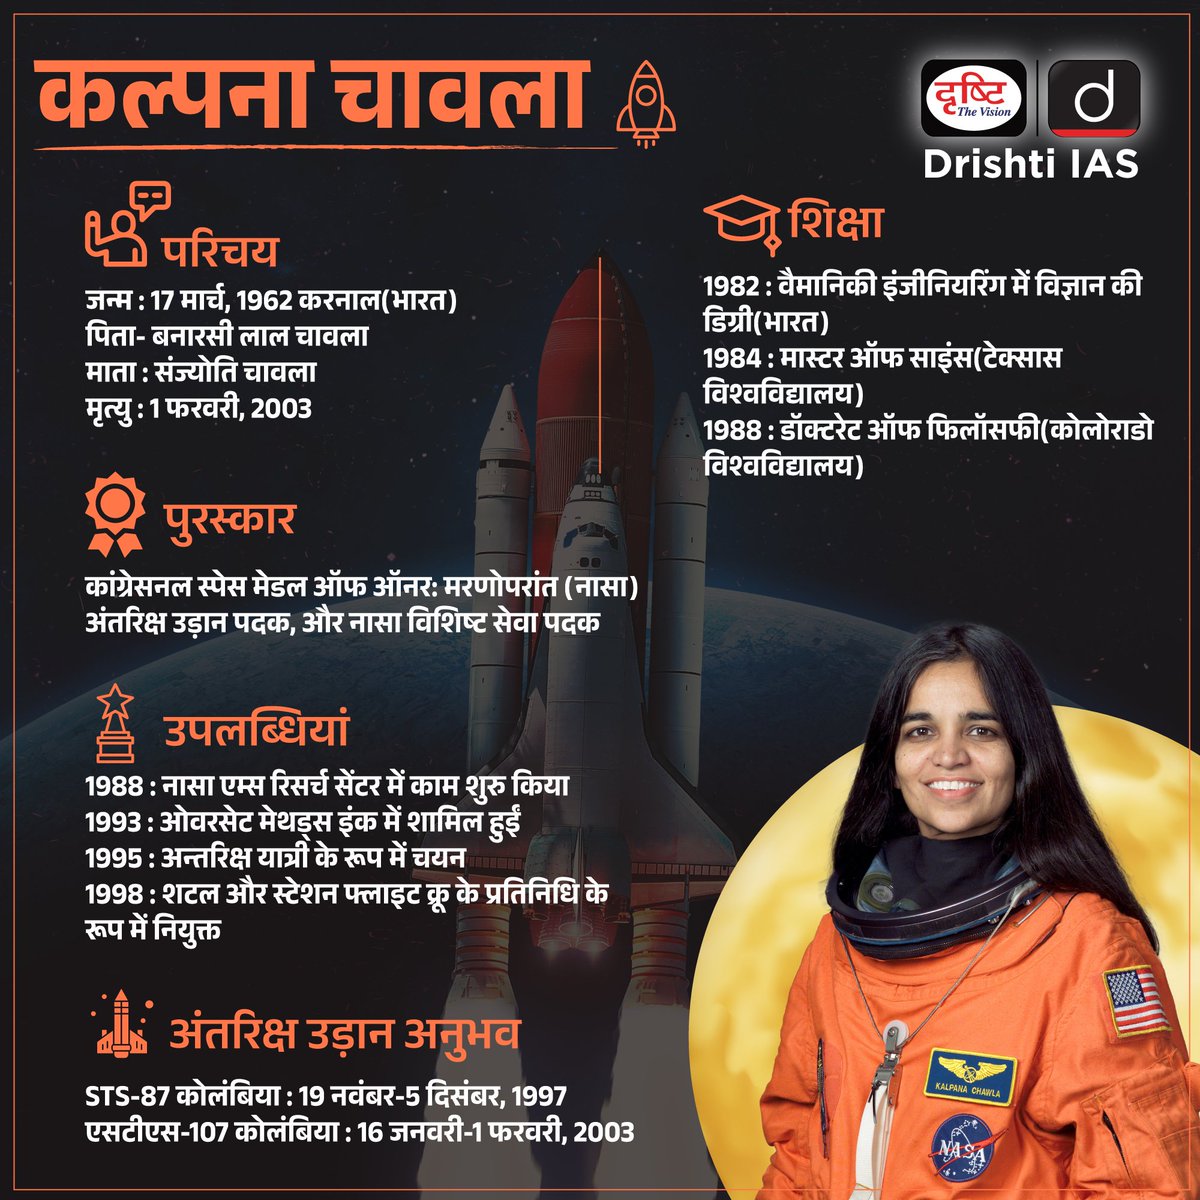 कल्पना चावला-
.
#KalpnaChawla #birthanniversary #scientist #WomenEmpowerment #Astronautas #space #universe #KARNAL #Haryana #India #NASA #Womenastronaut #womenpower #WomenInspiration #firstindianfemaleastronaut #INDIANPRIDE #Drishtiias #Drishtipcs #pcs #UPSC